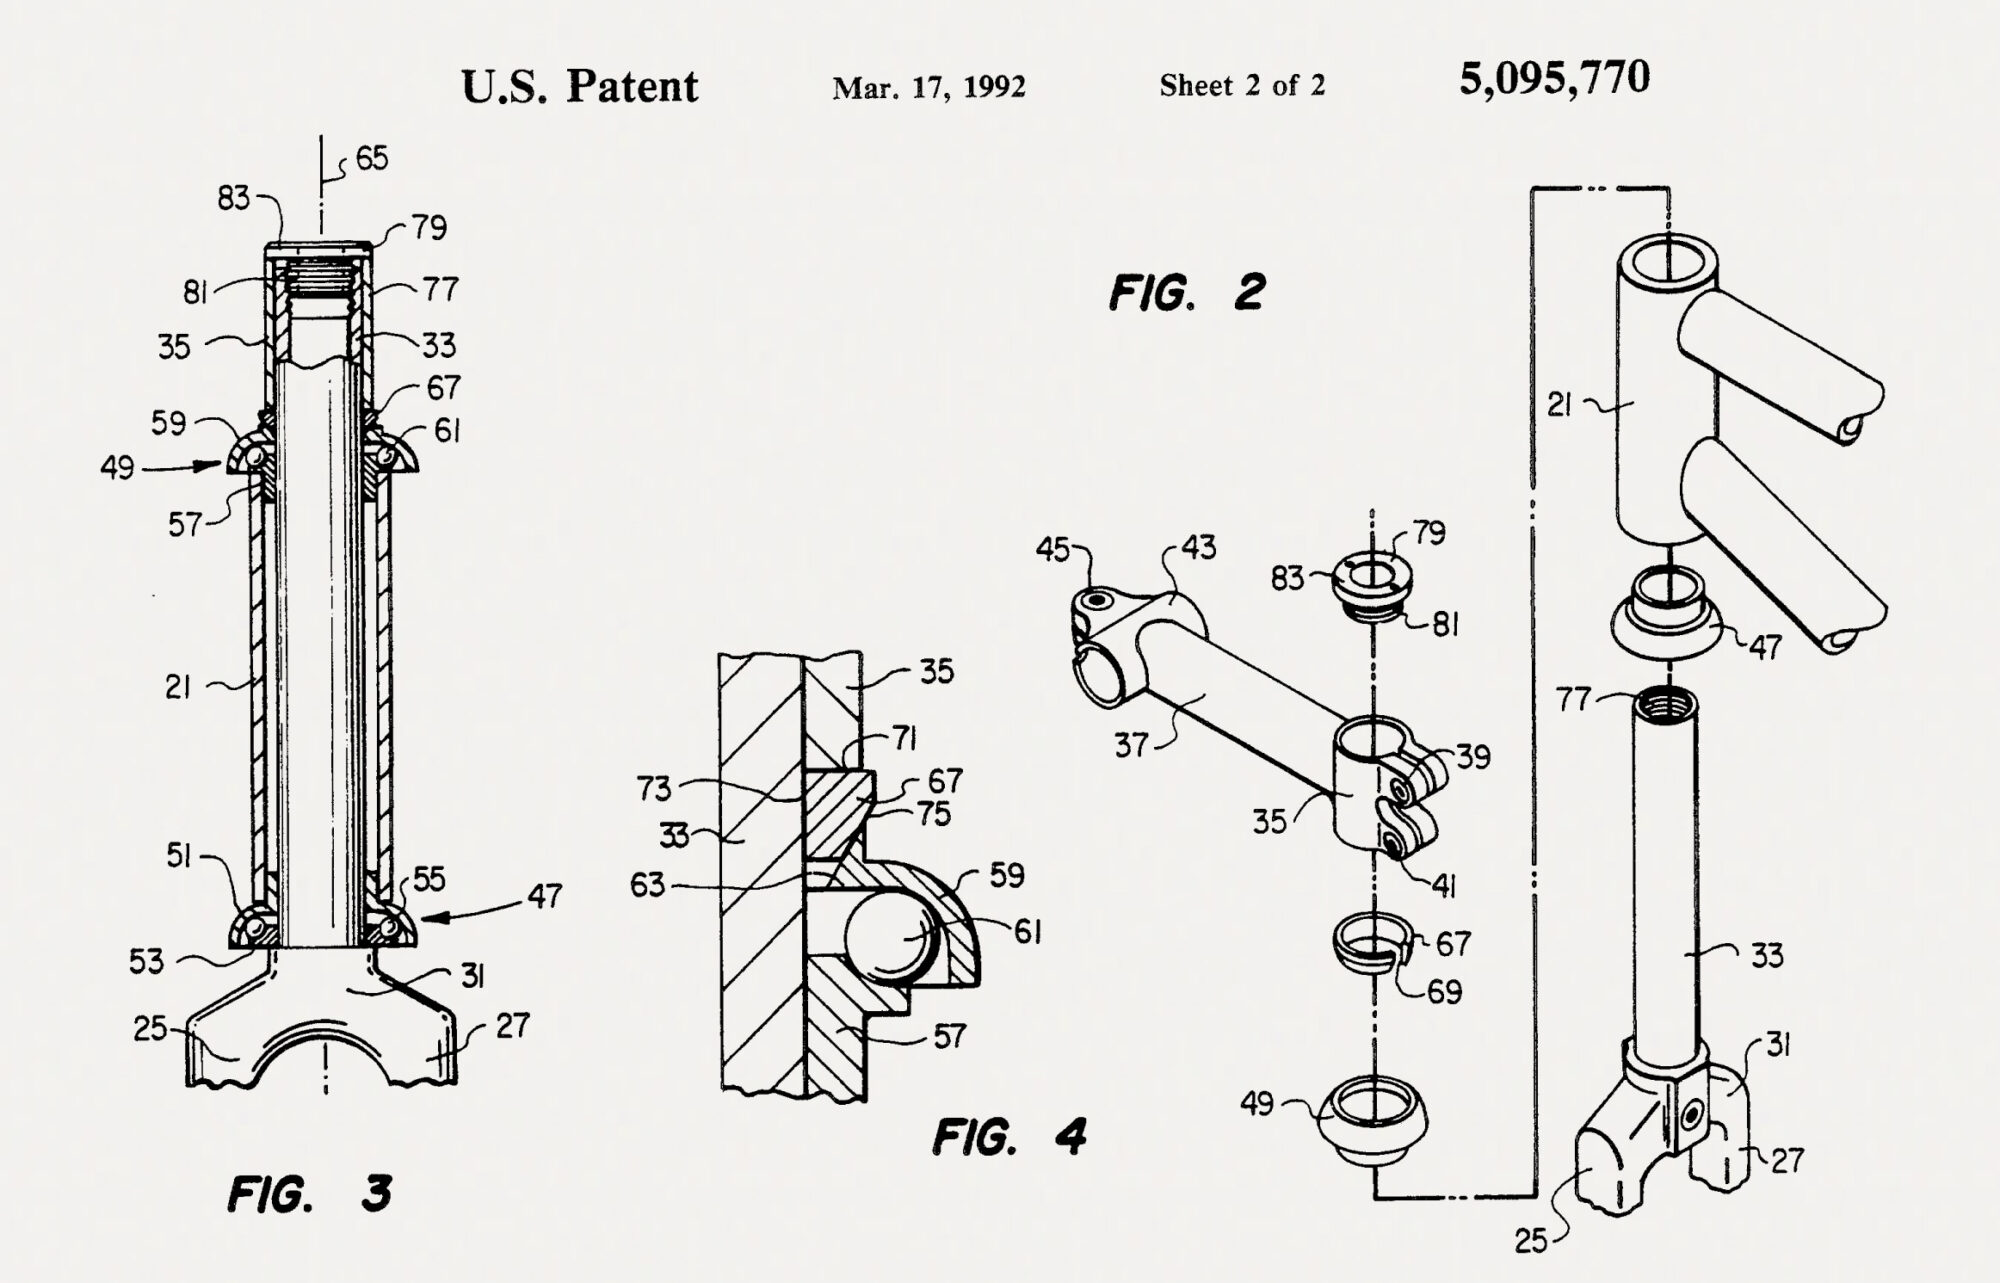 Aheadset Patent Drawing, John Rader